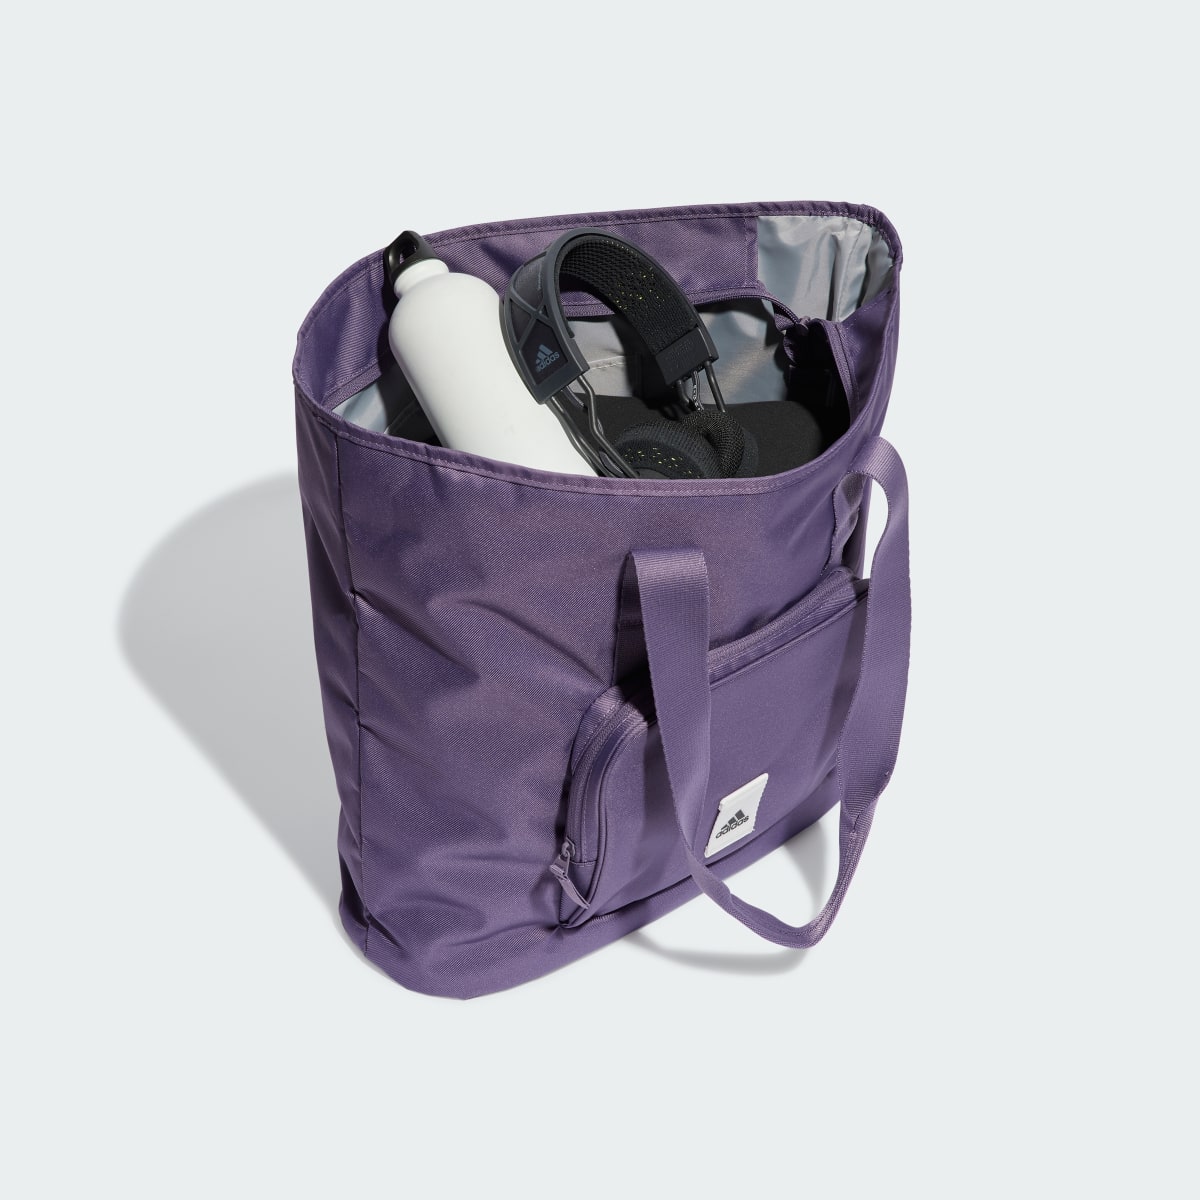 Adidas Tote Bag Prime. 5